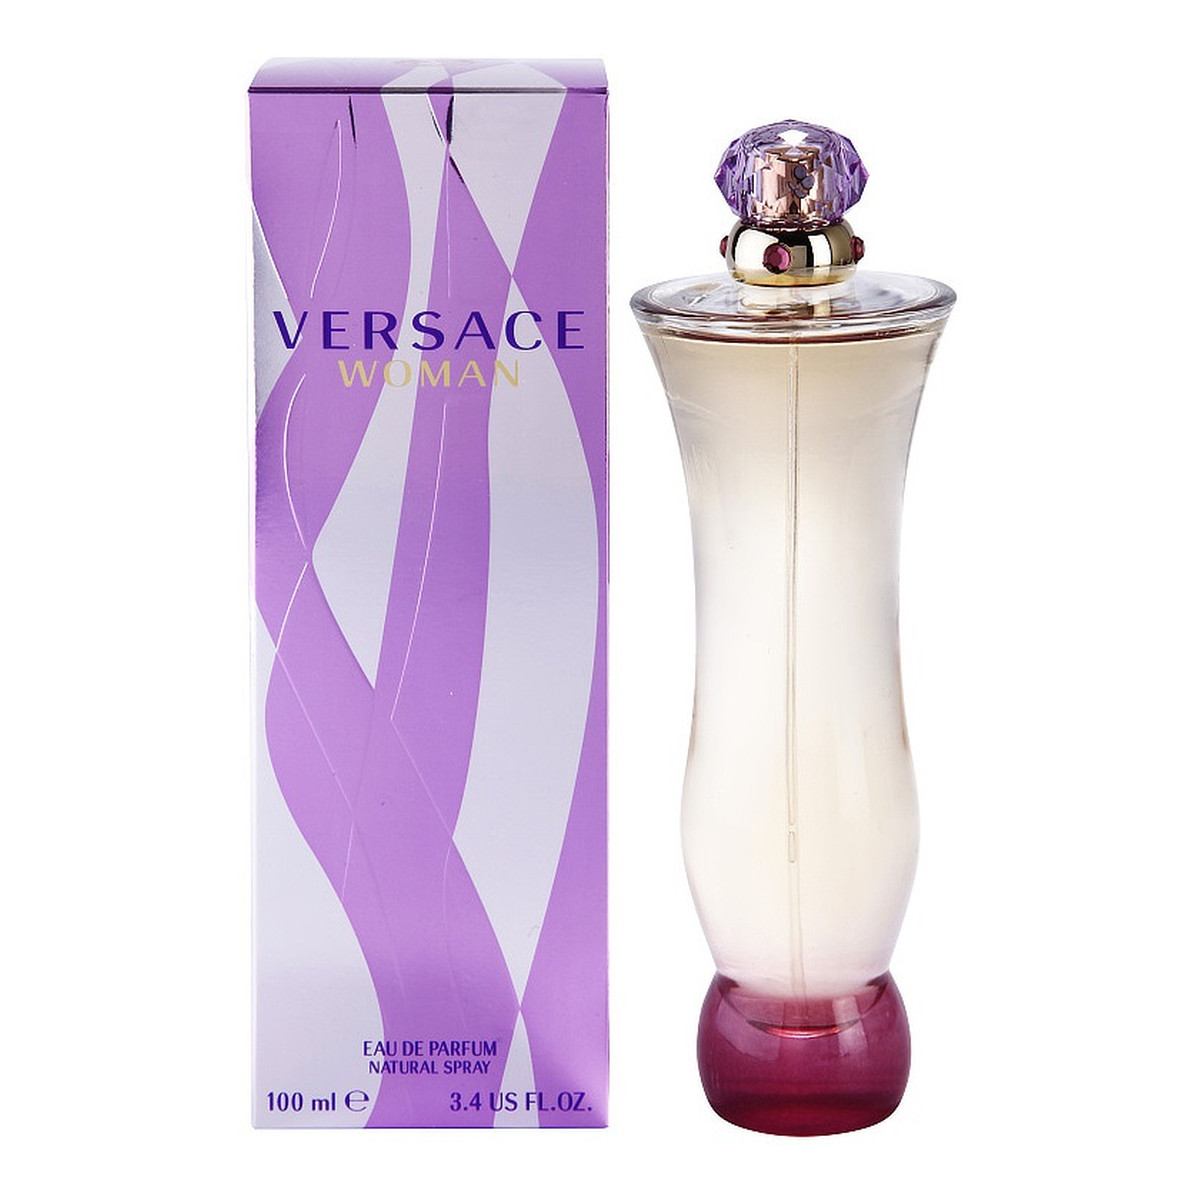 Versace Woman woda perfumowana dla kobiet 100ml